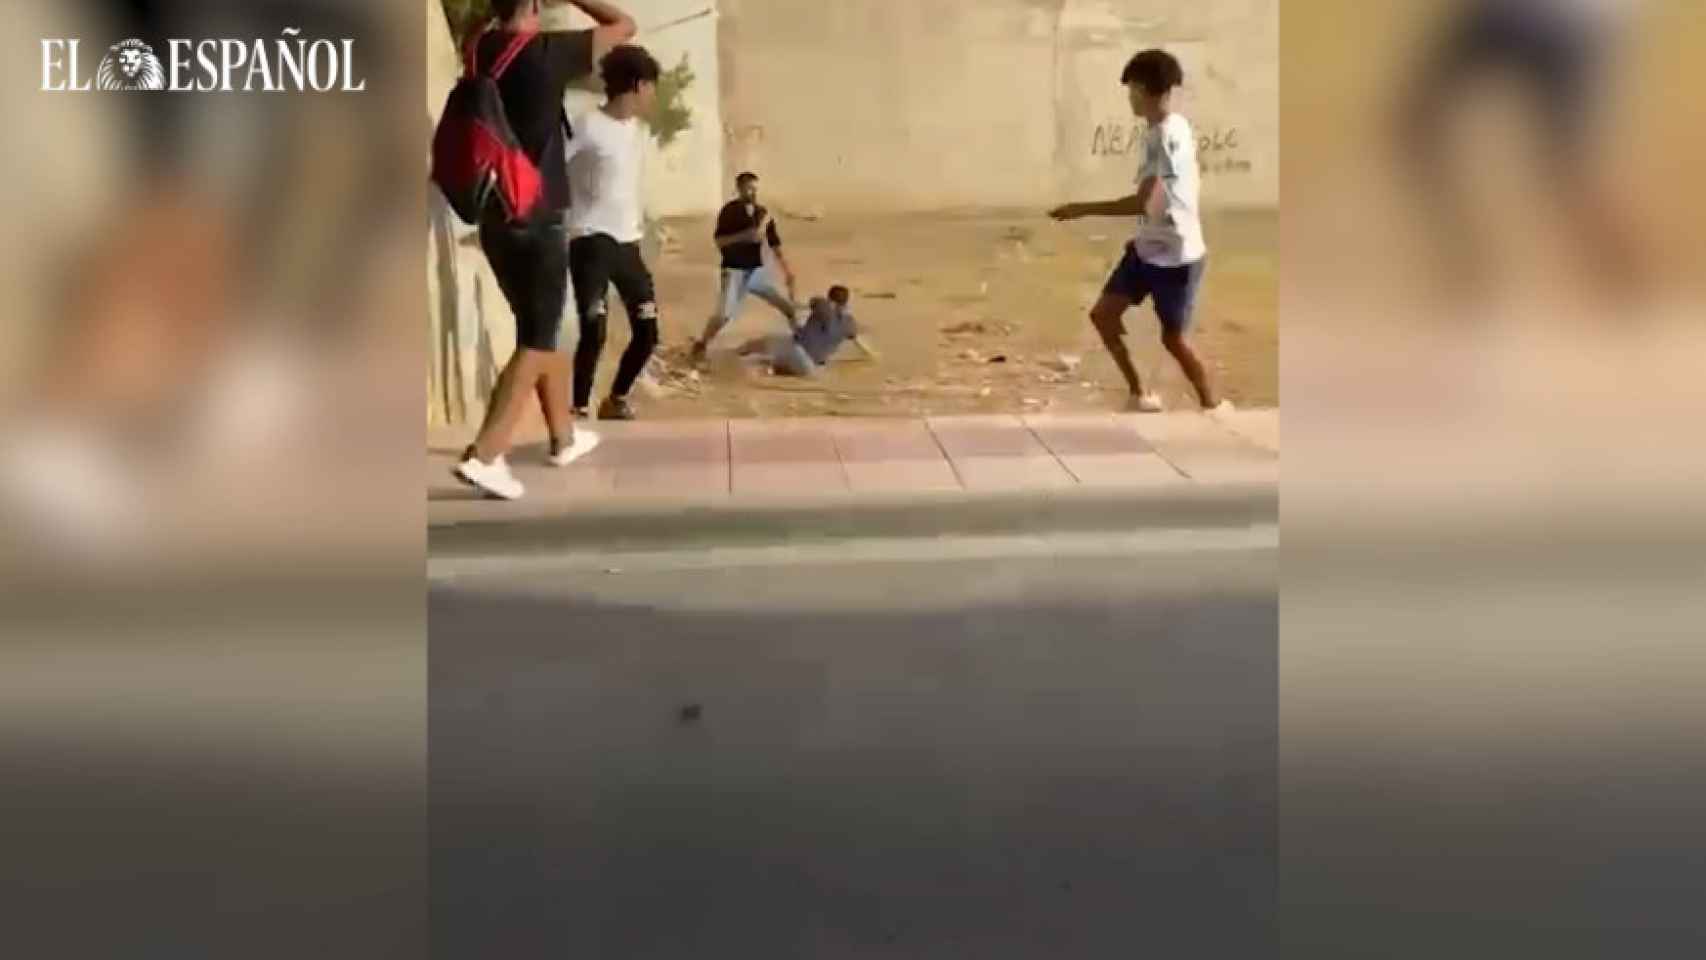 Un instante del vídeo de la agresión captado en Albatera.